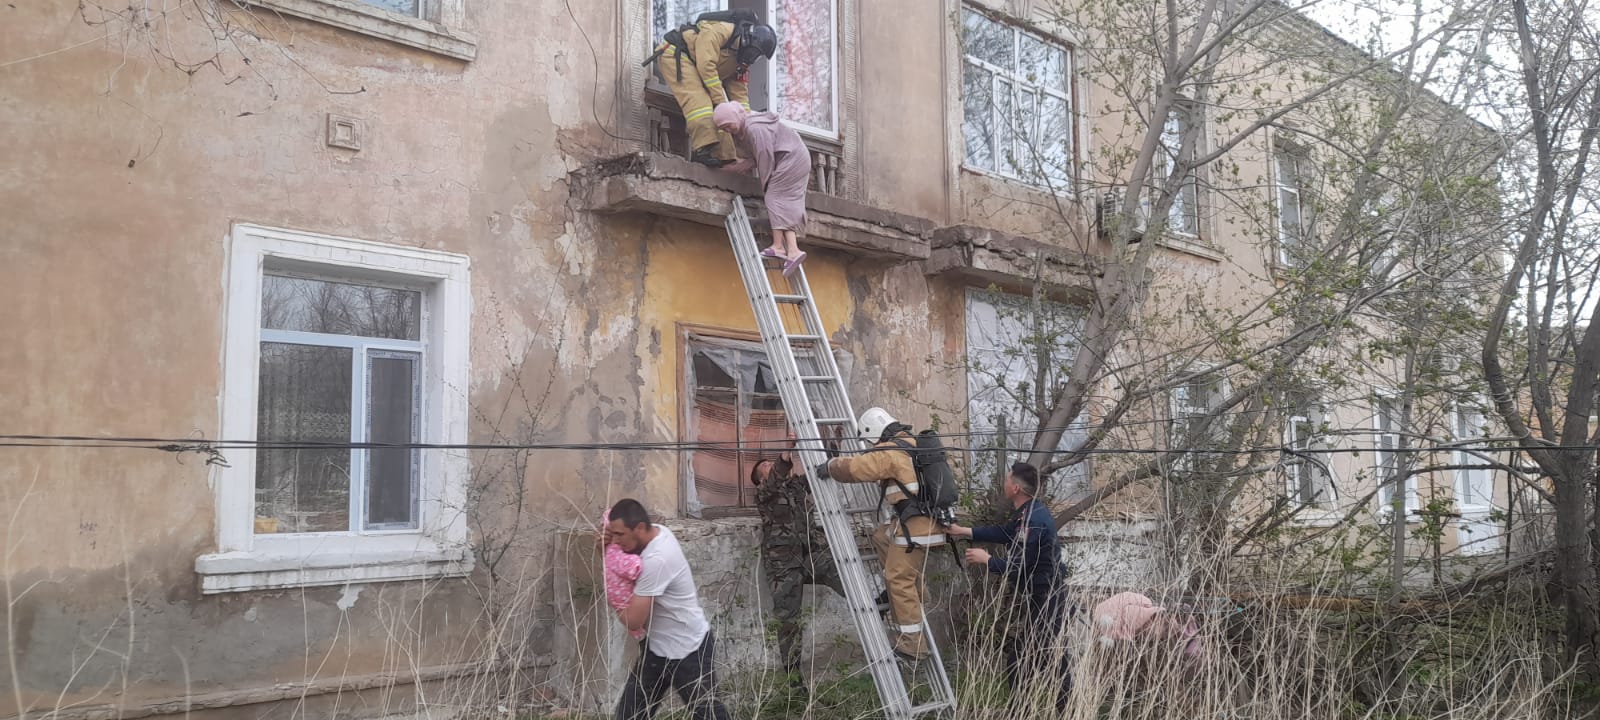 В Темирском районе спасатели спасли от пожара 8 человек